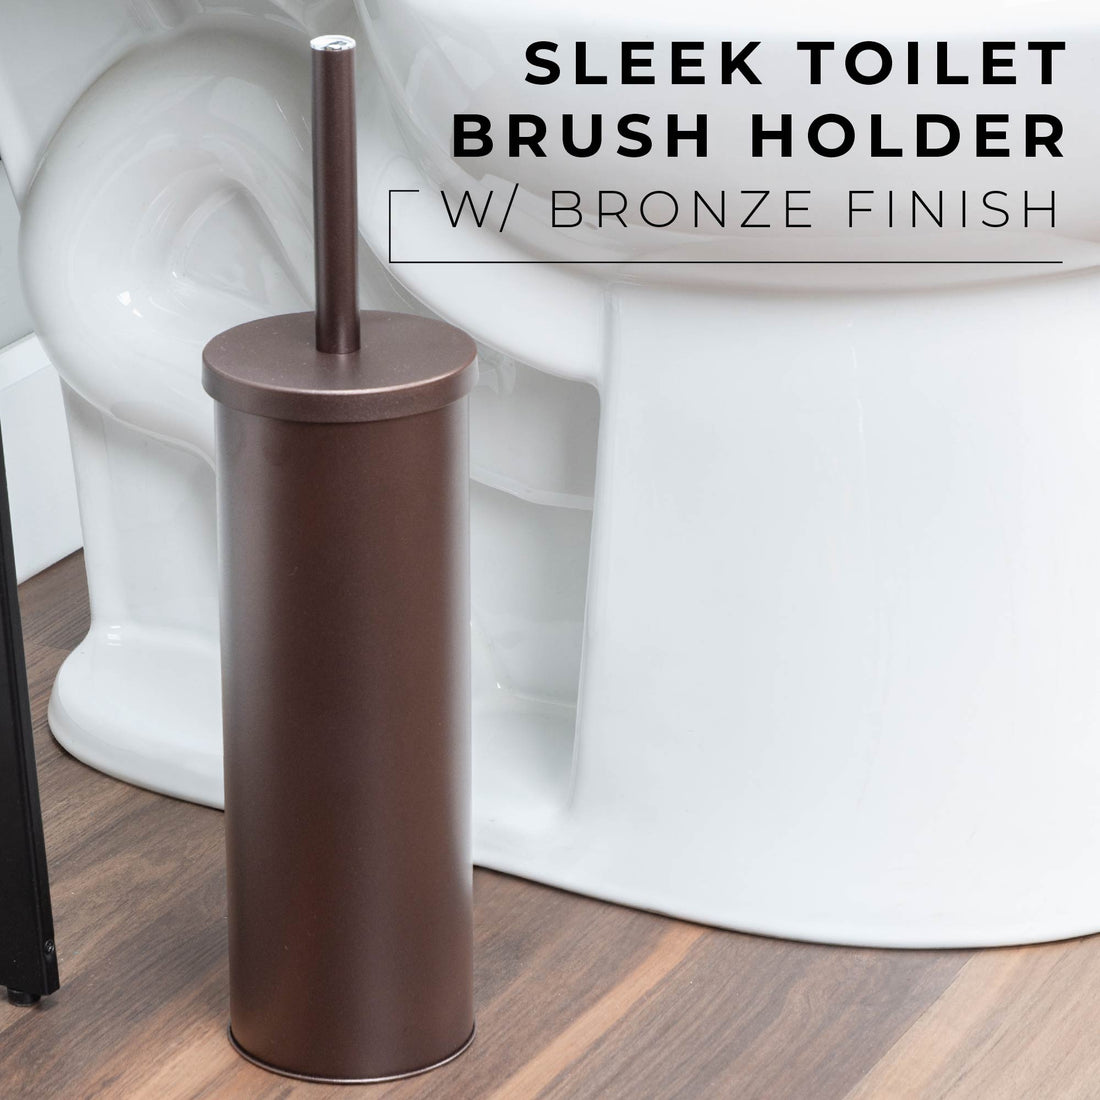 Toilet Brush and Holder, 2-Pack (Bronze Finish) - Utility sinks vanites Tehila